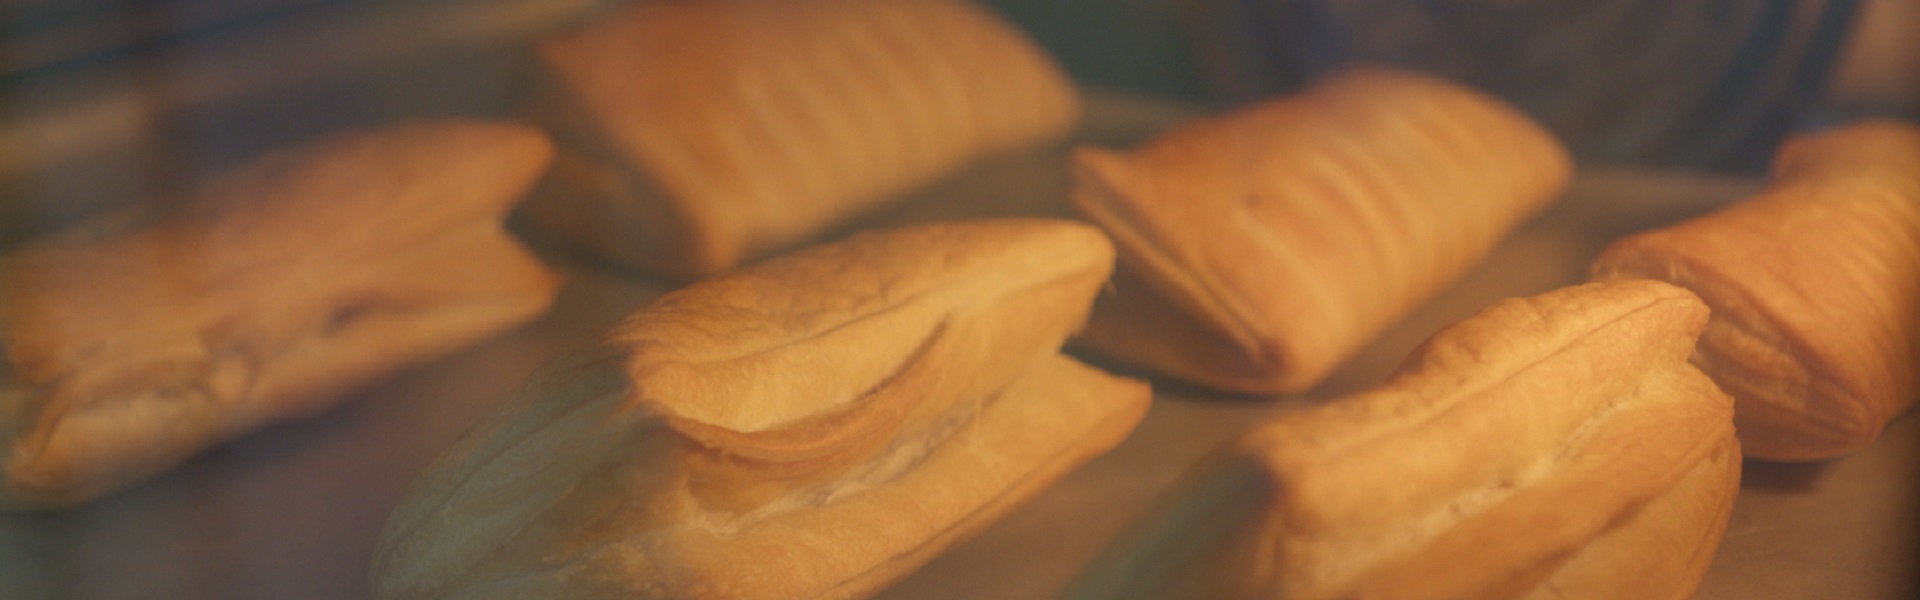 Круассаны и булочки с секретом в «Слате»: иркутянка рассказала о производстве выпечки